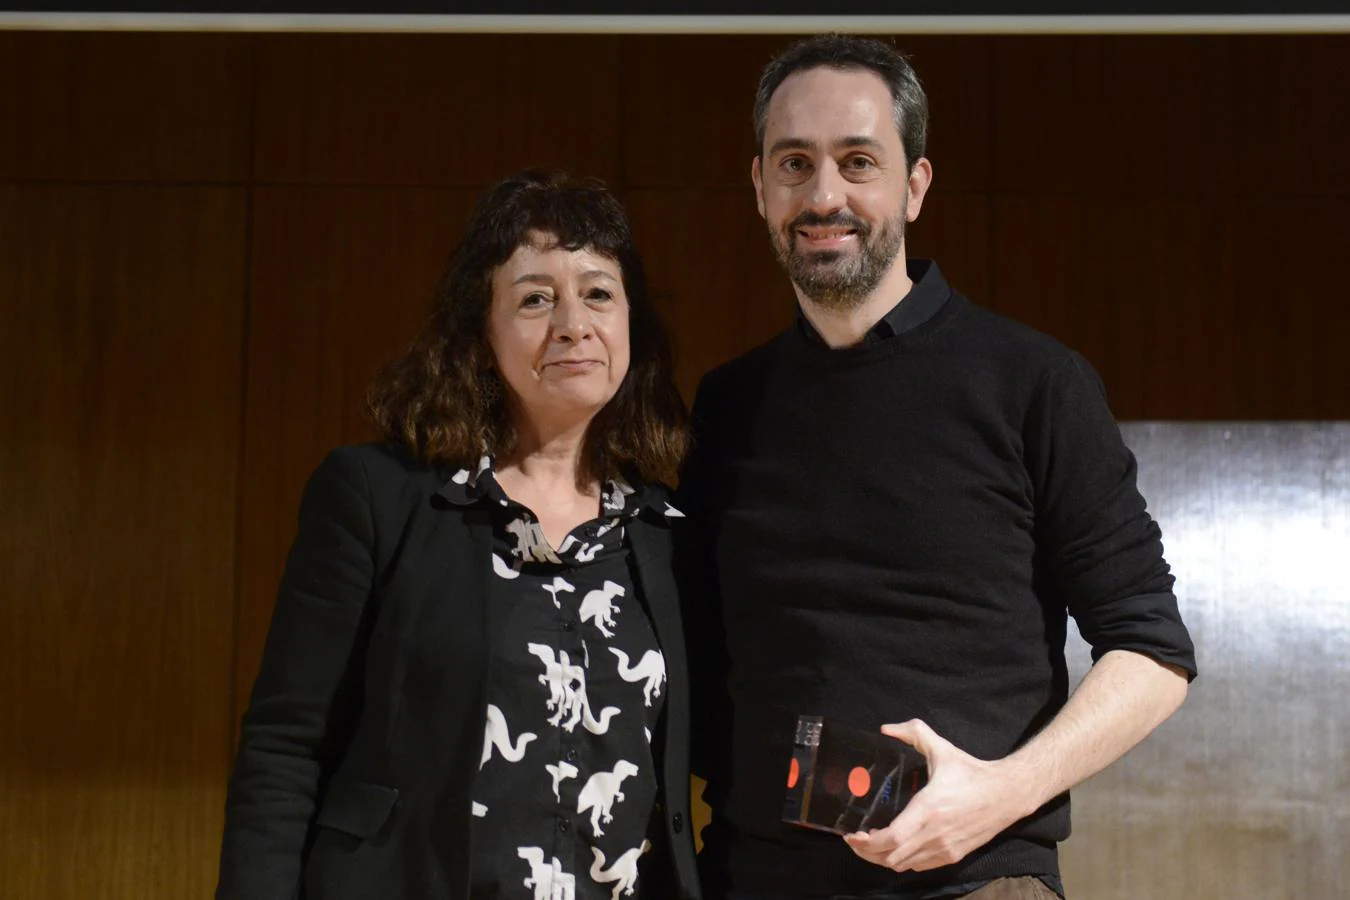 Premio al mejor i-Corto: «Broccoli». Pilar García Elegido (directora de cine) entregó el premio a Patrick Finger, actor protagonista de en nombre del director, Iván-Sáinz Pardo